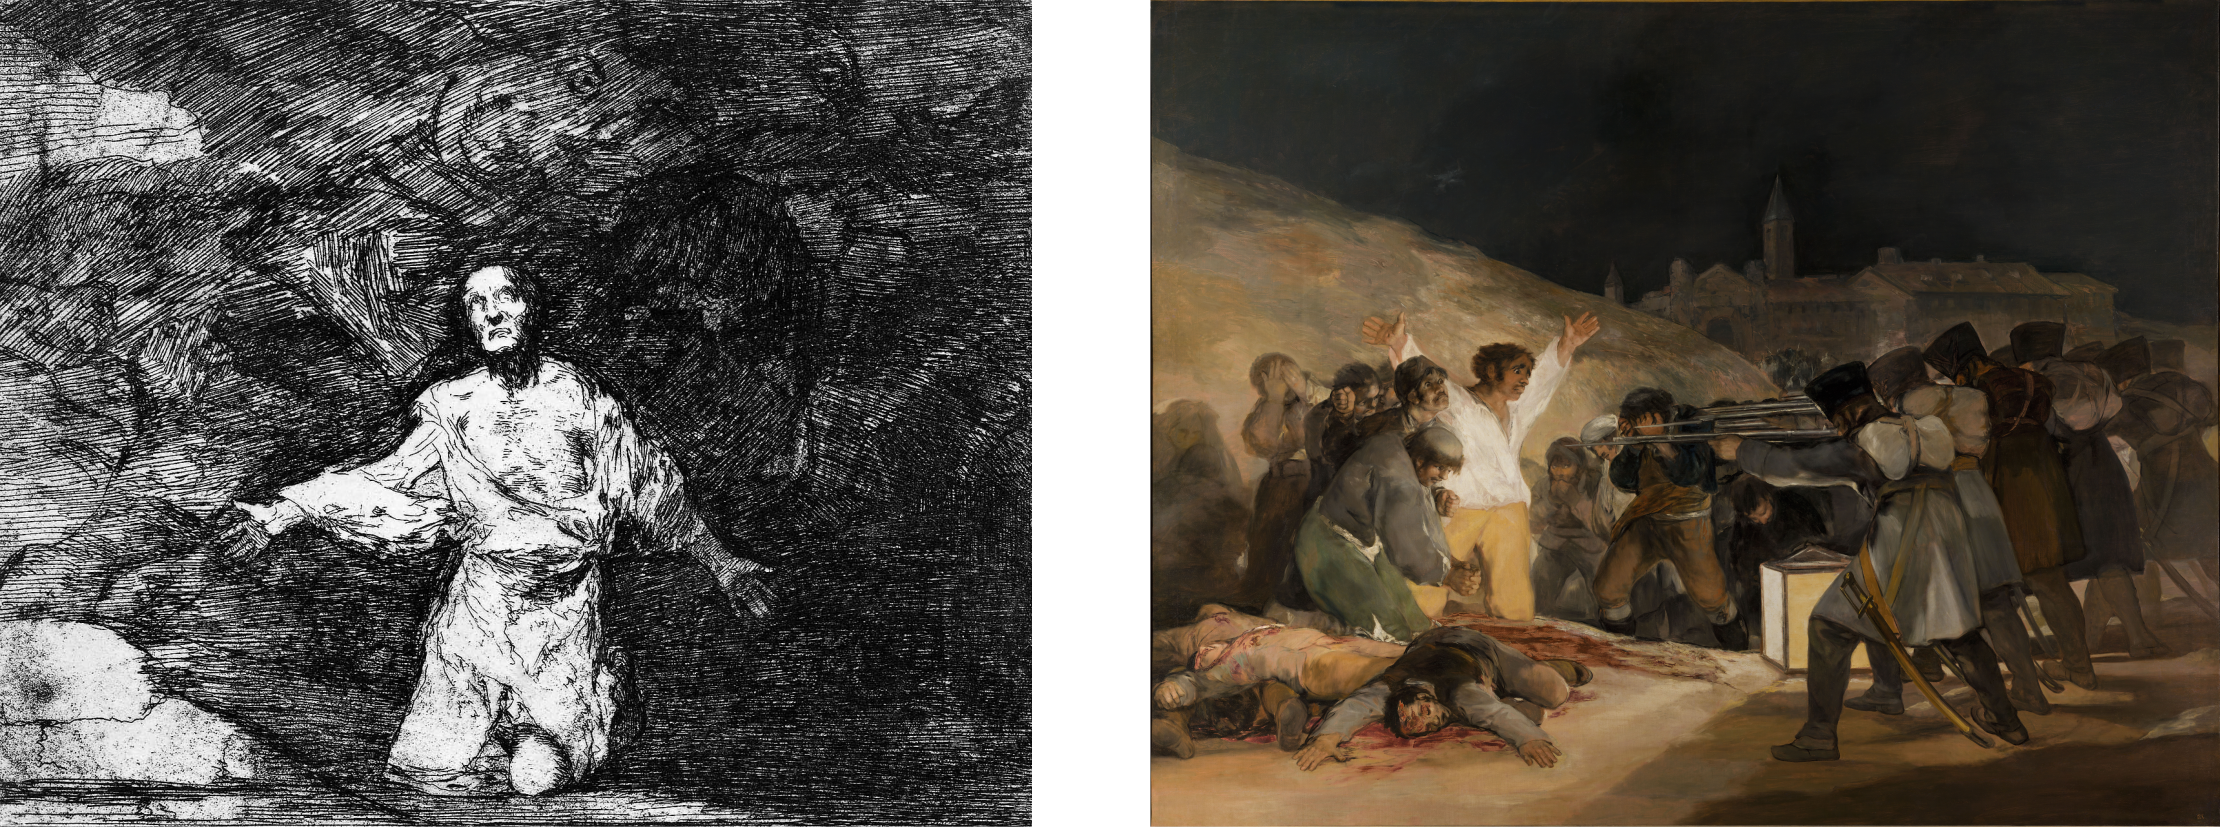  Francisco Goya, 'Trieste voortekenen van wat er gaat komen', in: 'Rampen der oorlog' en 'De derde van mei 1808'